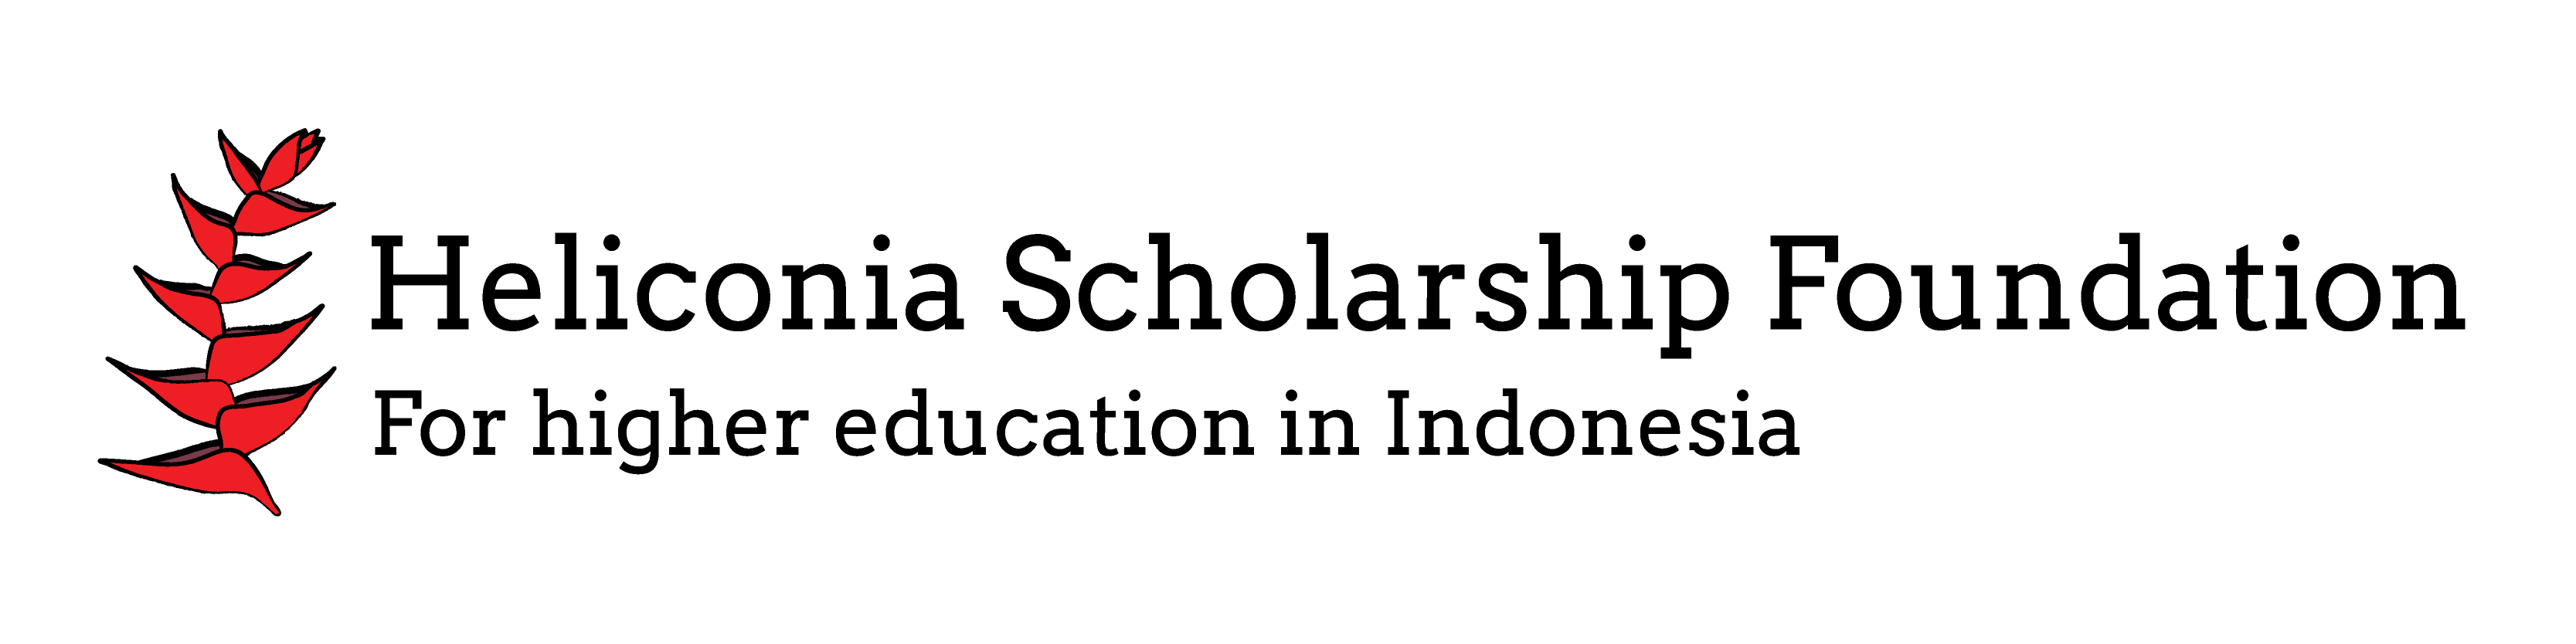 Heliconia Scholarship Foundation logo